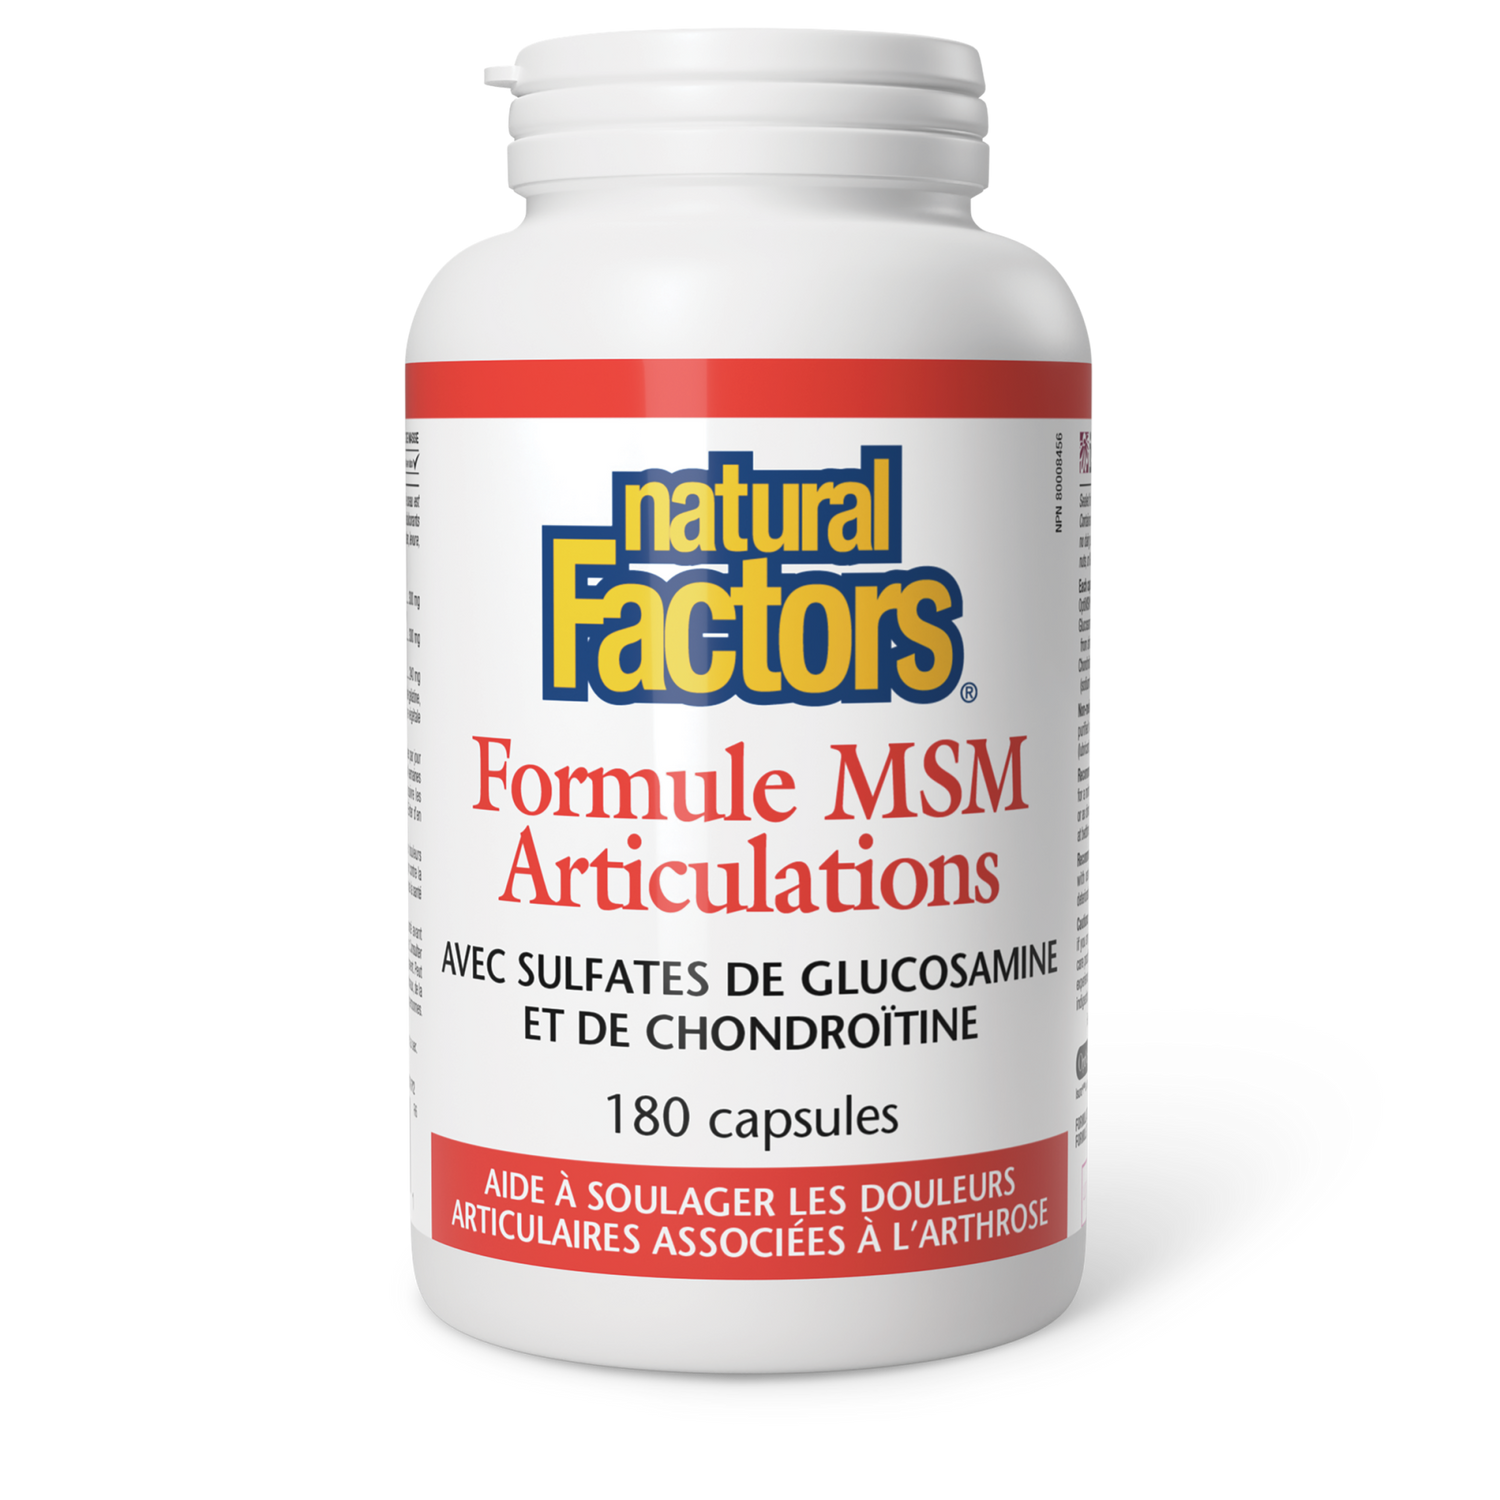 Formule MSM Articulations, Natural Factors|v|image|2696